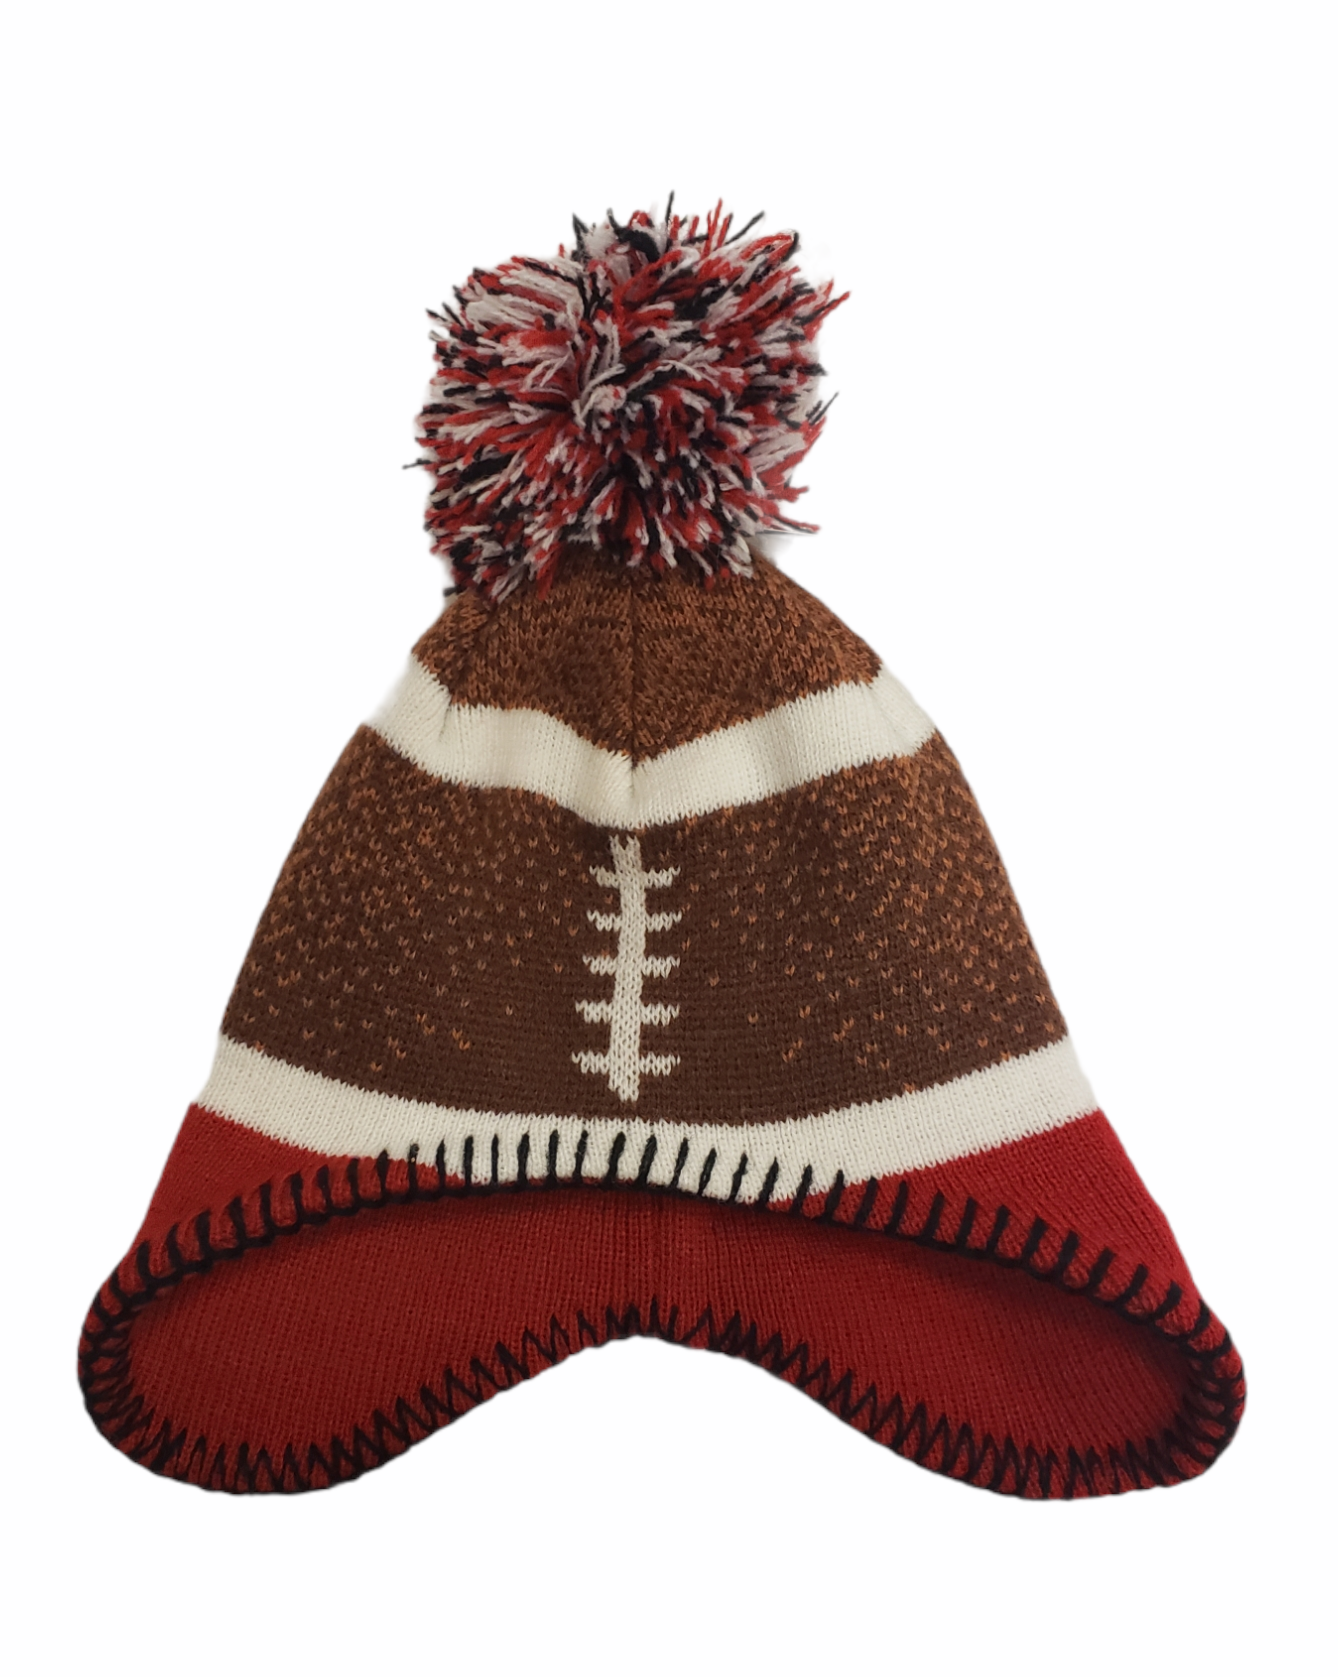 CFL Kids Knit Hat Football Head Cuffed Redblacks